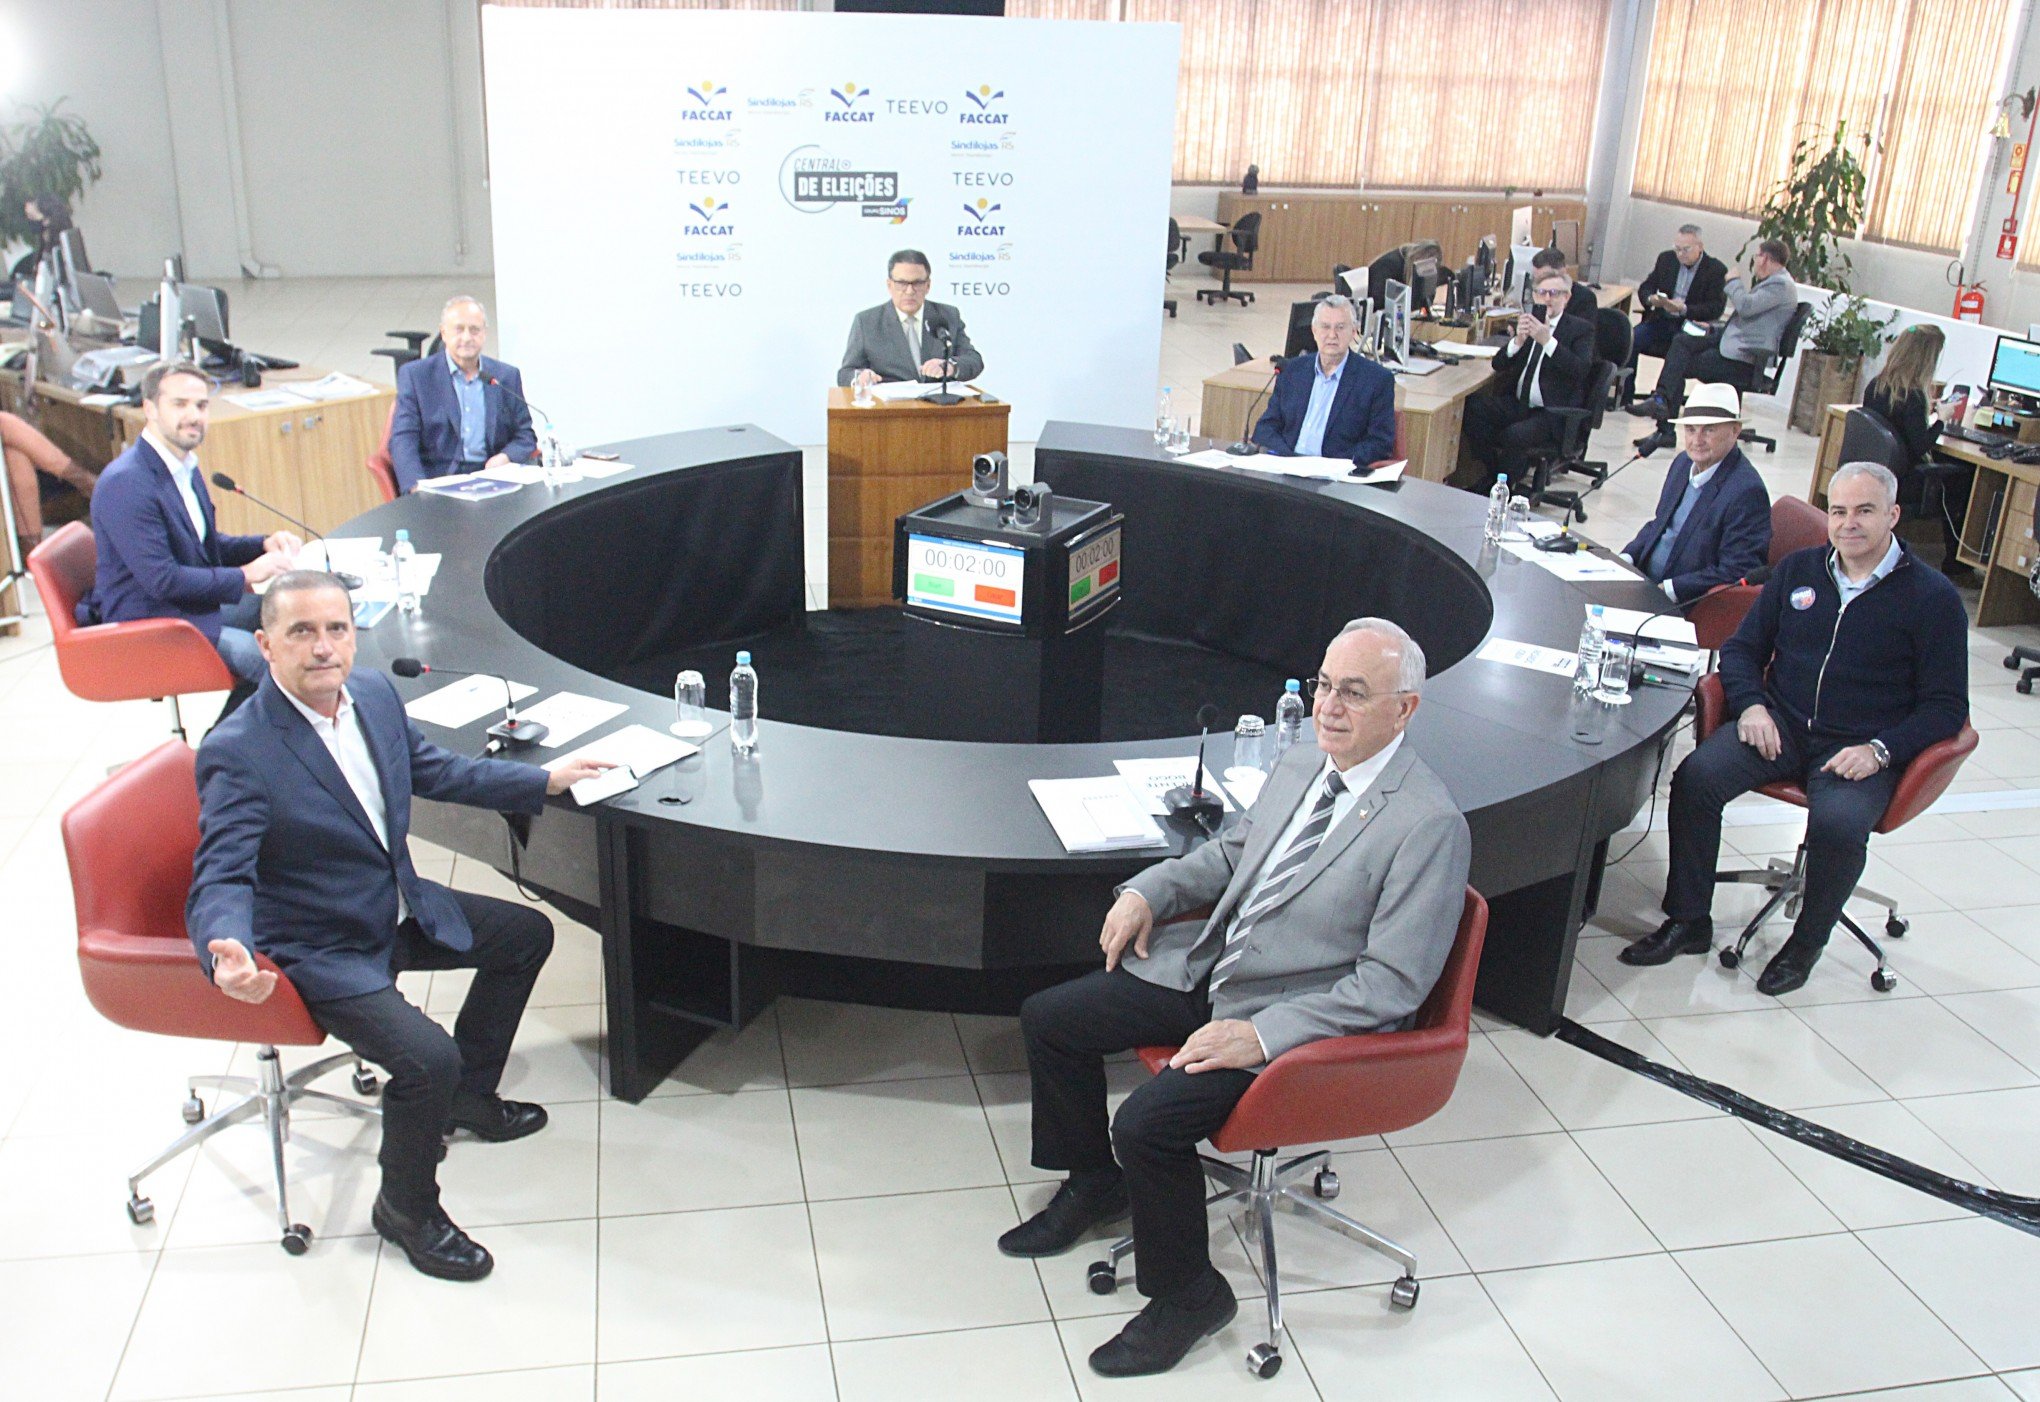 Privatização da Corsan tem mais um avanço; conheça pontos do novo acordo